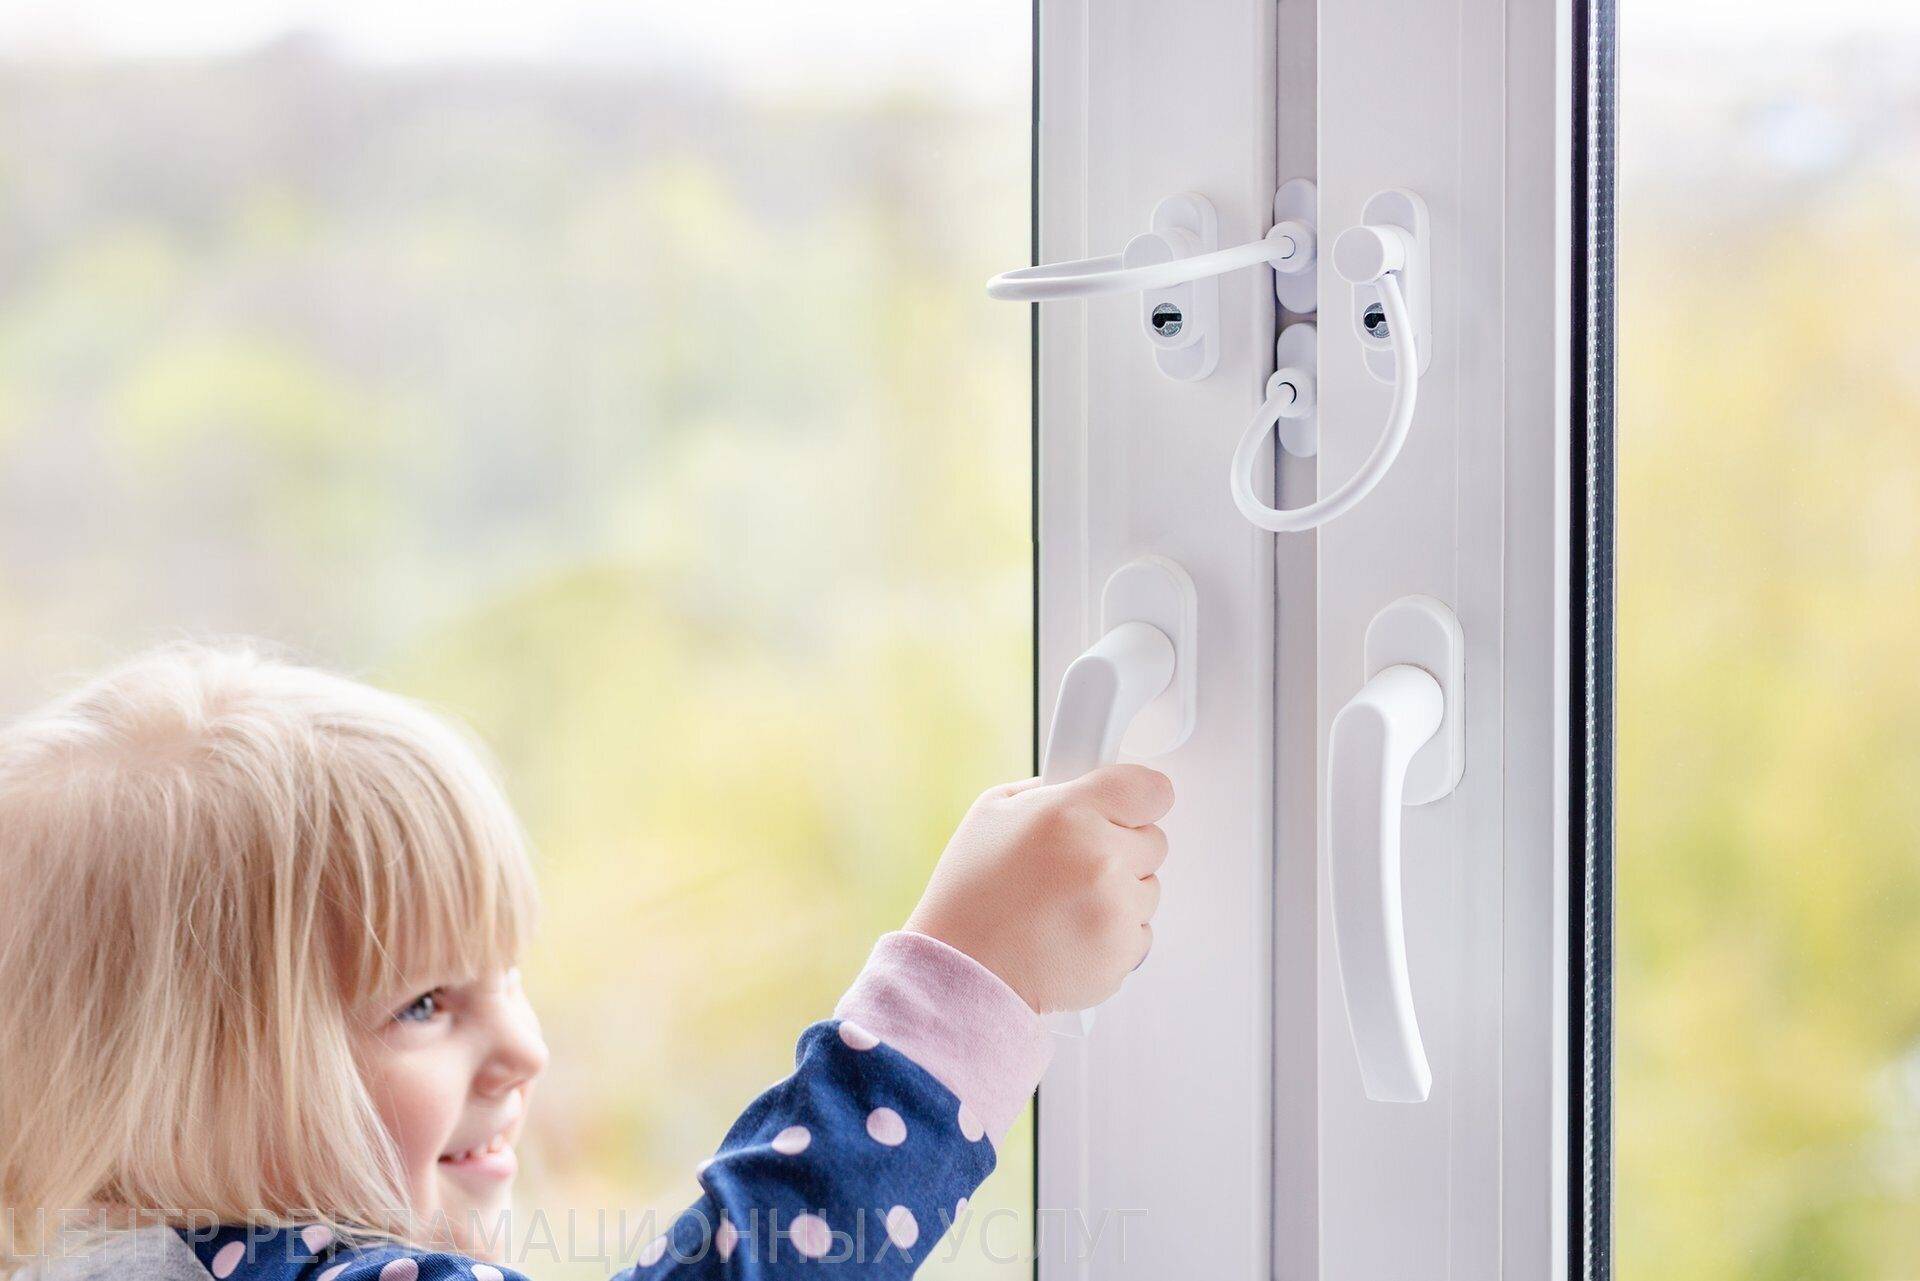 Защита на окна от детей: варианты замков, блокираторов и заглушек + лучшие производители фурнитуры для безопасности